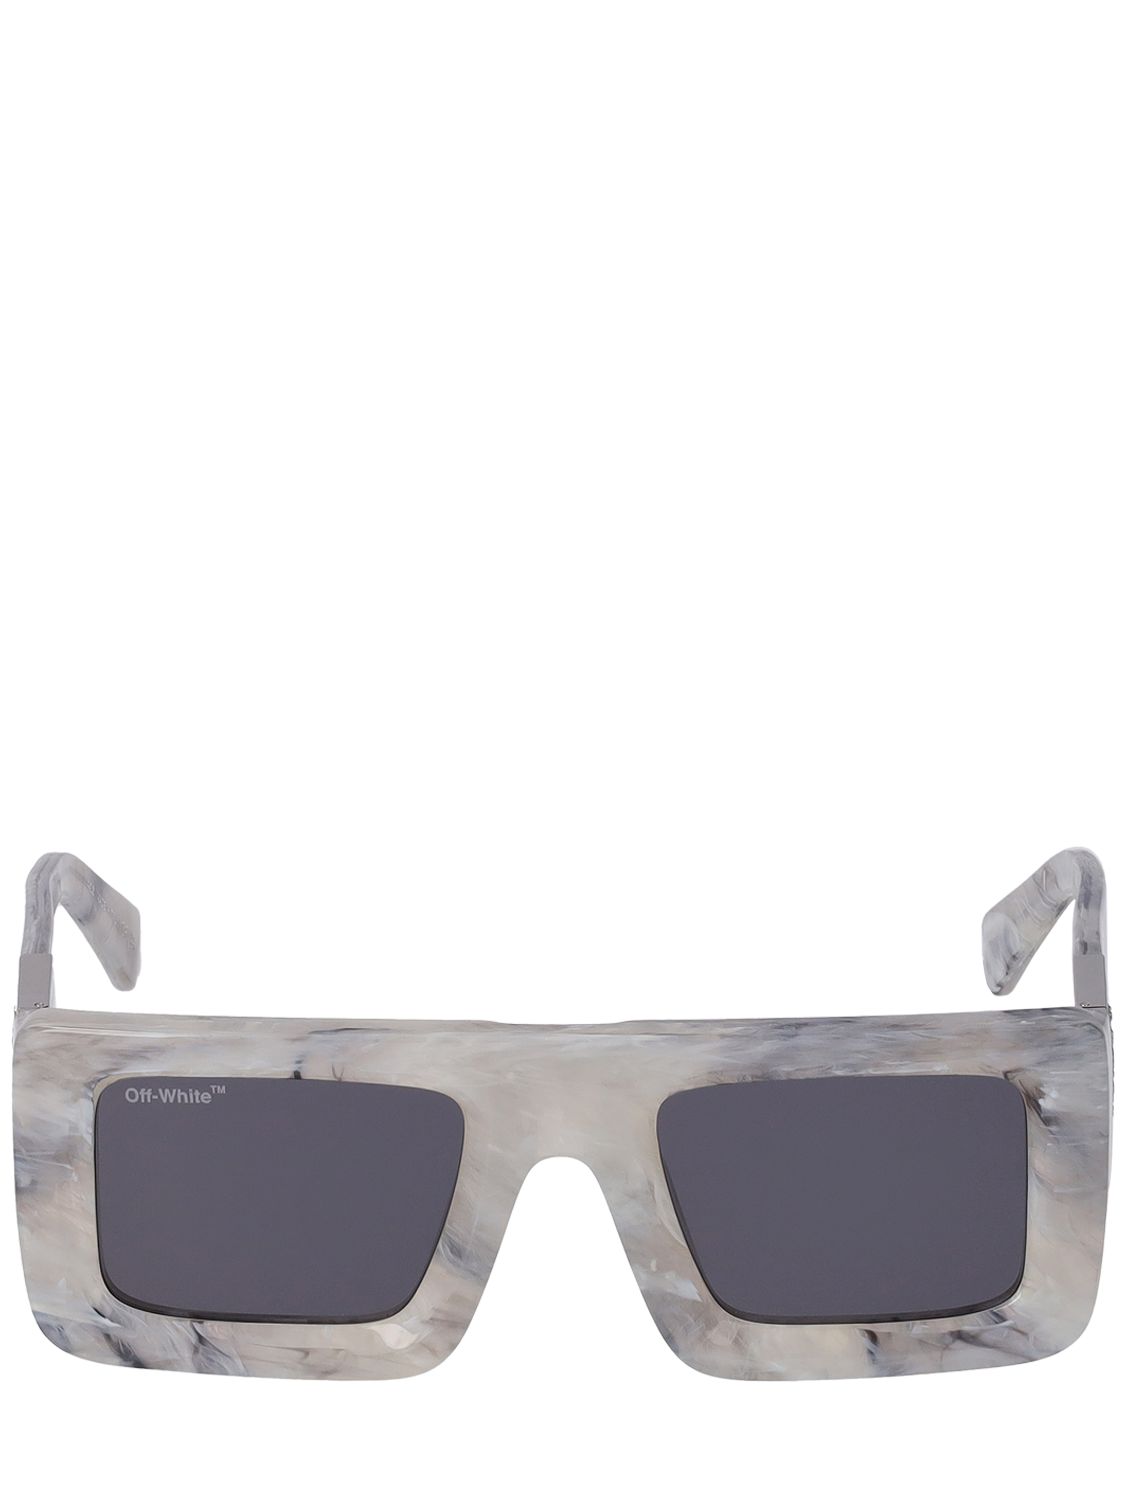 Leonardo Squared Acetate Sunglasses - OFF-WHITE - Modalova